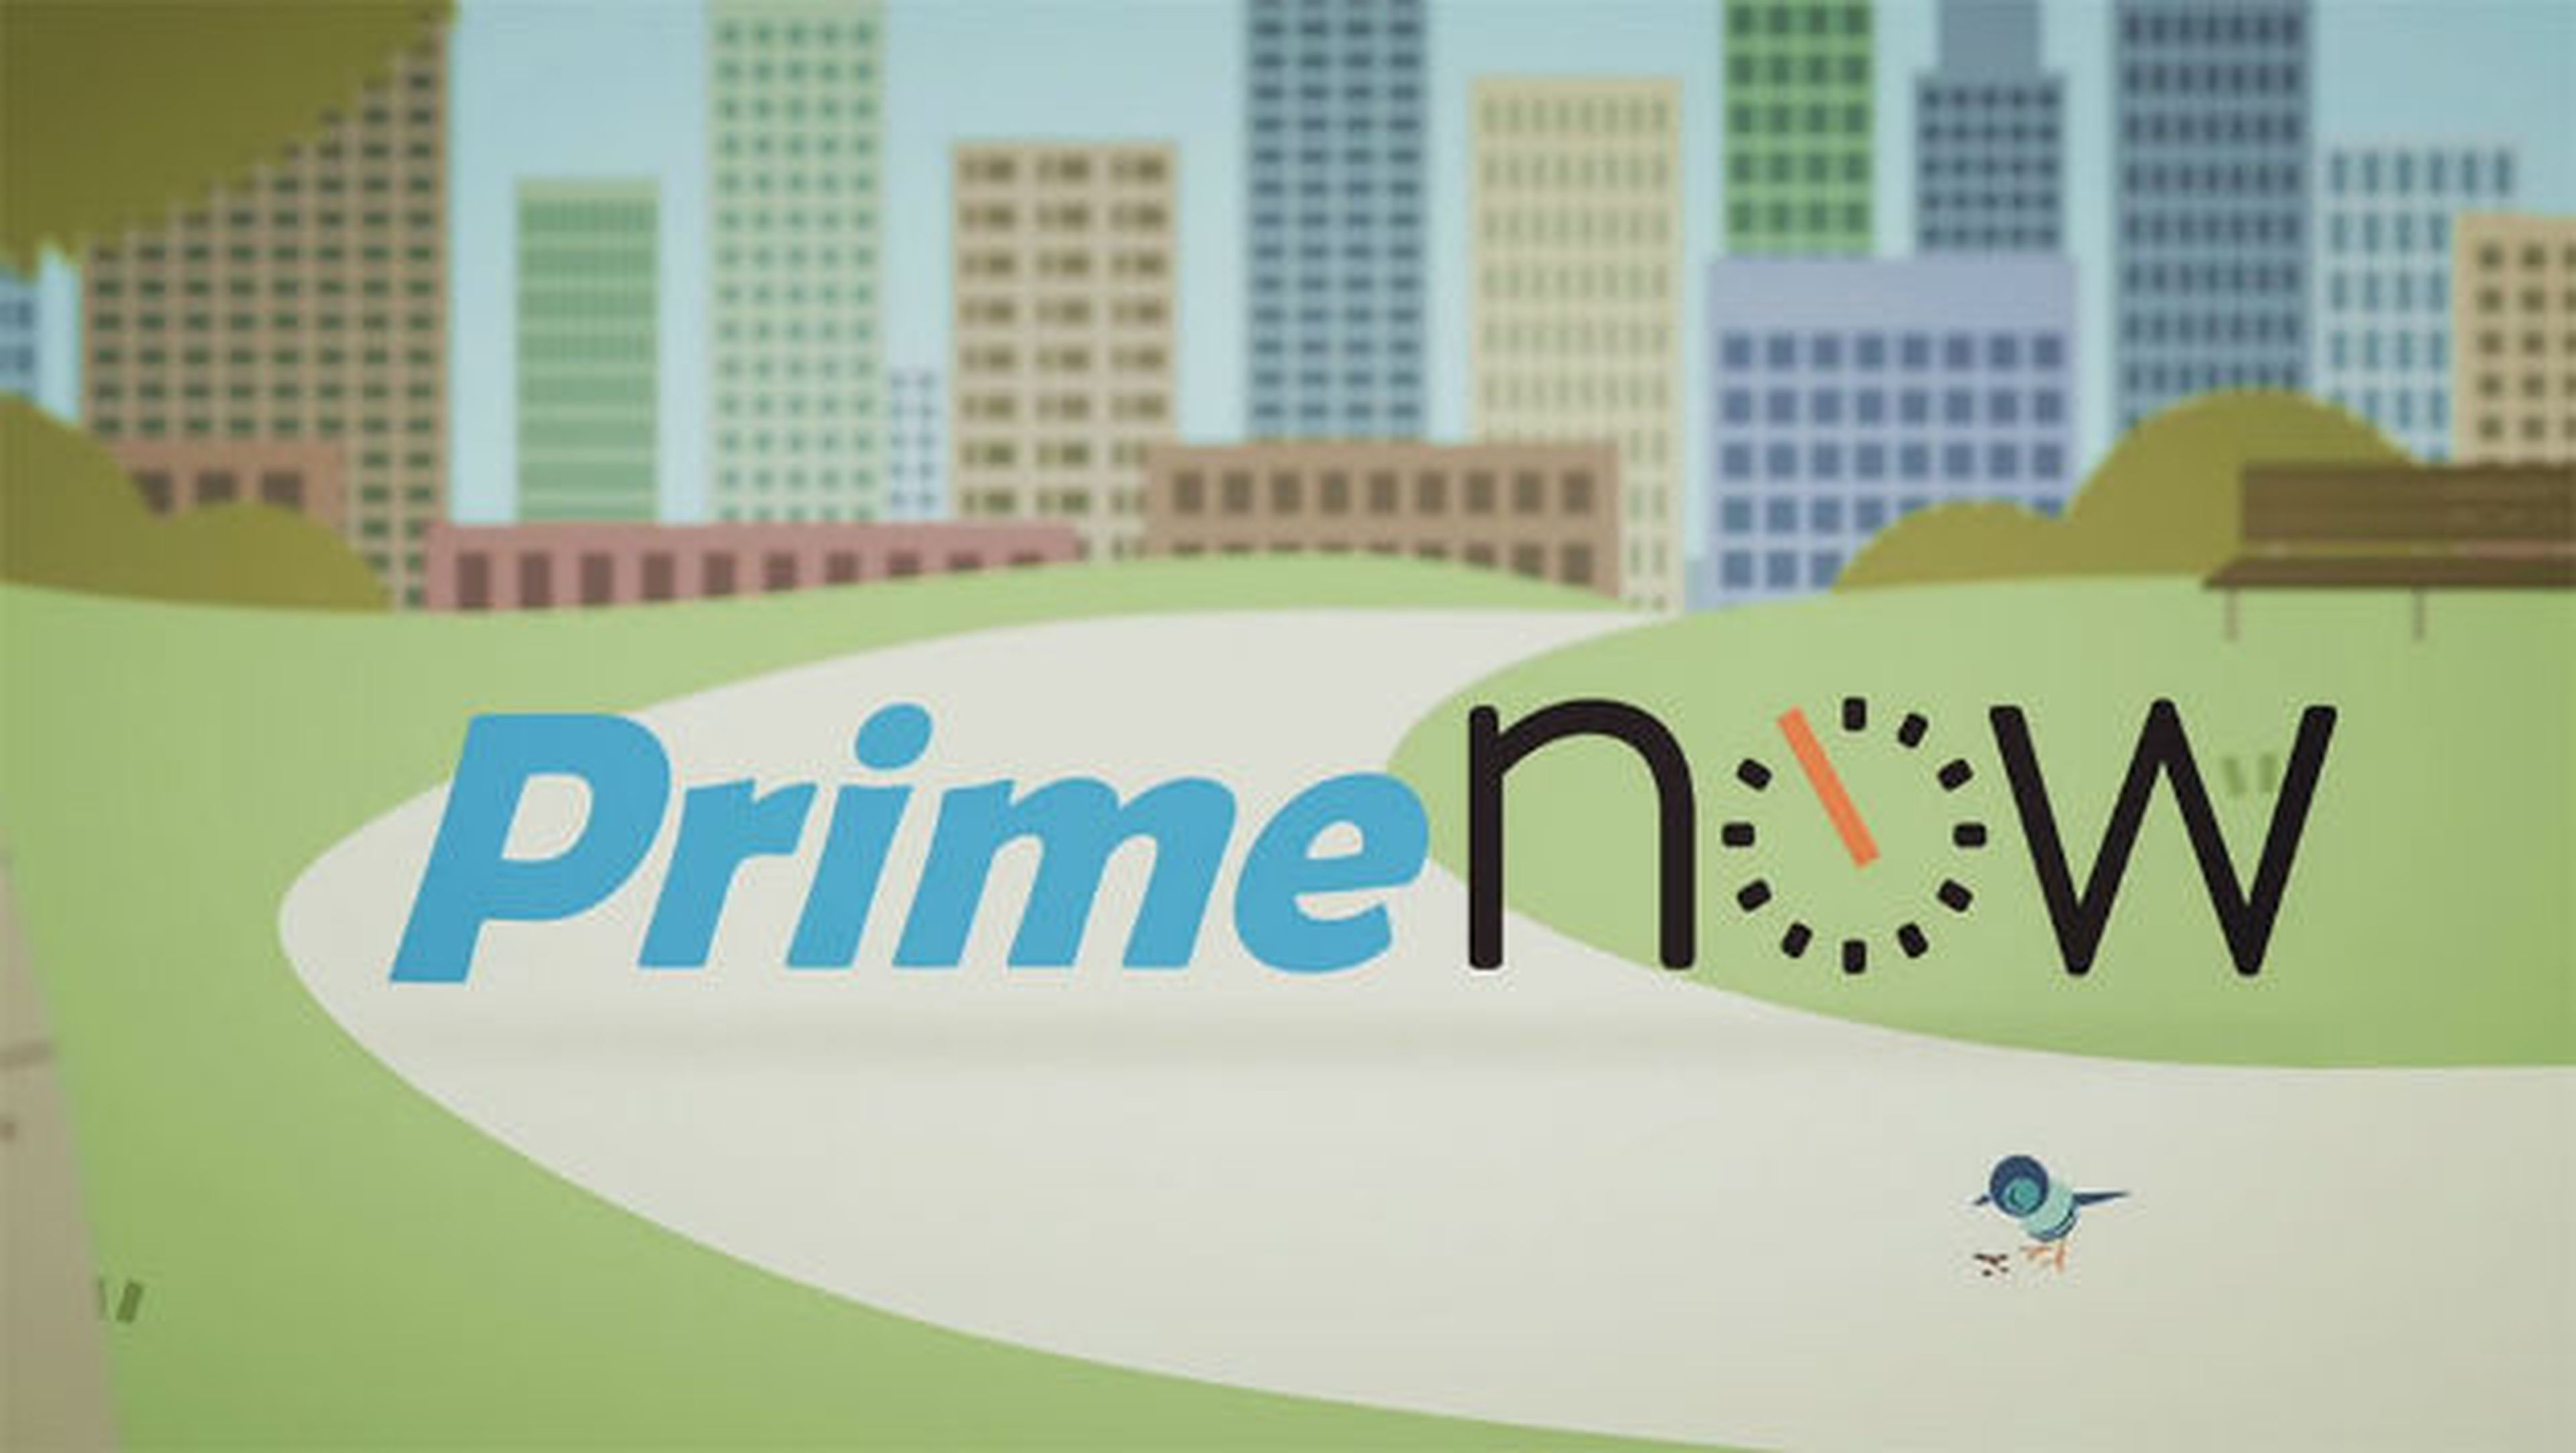 Los envíos gratis de Amazon Prime Now son ahora el doble de caros.